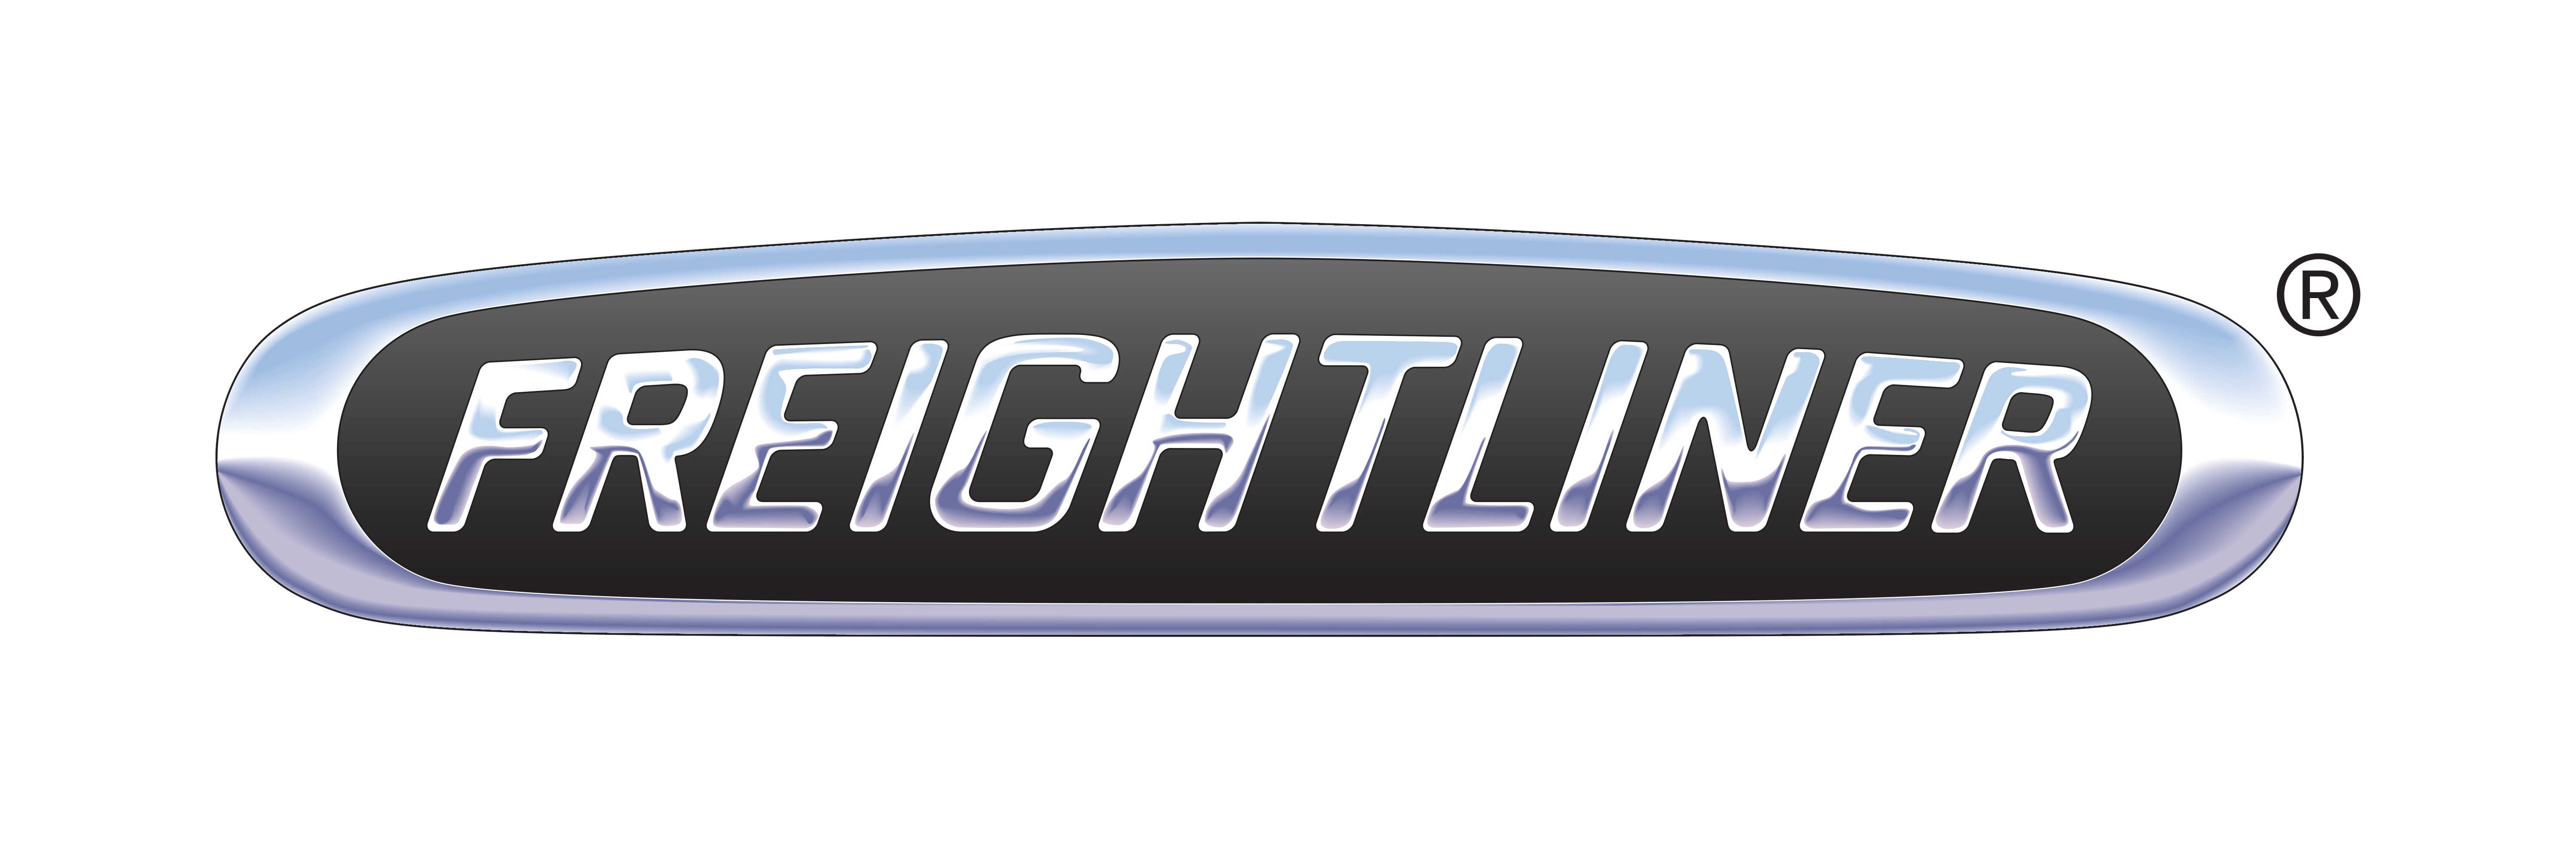 Freightliner logo 6000x2000 1